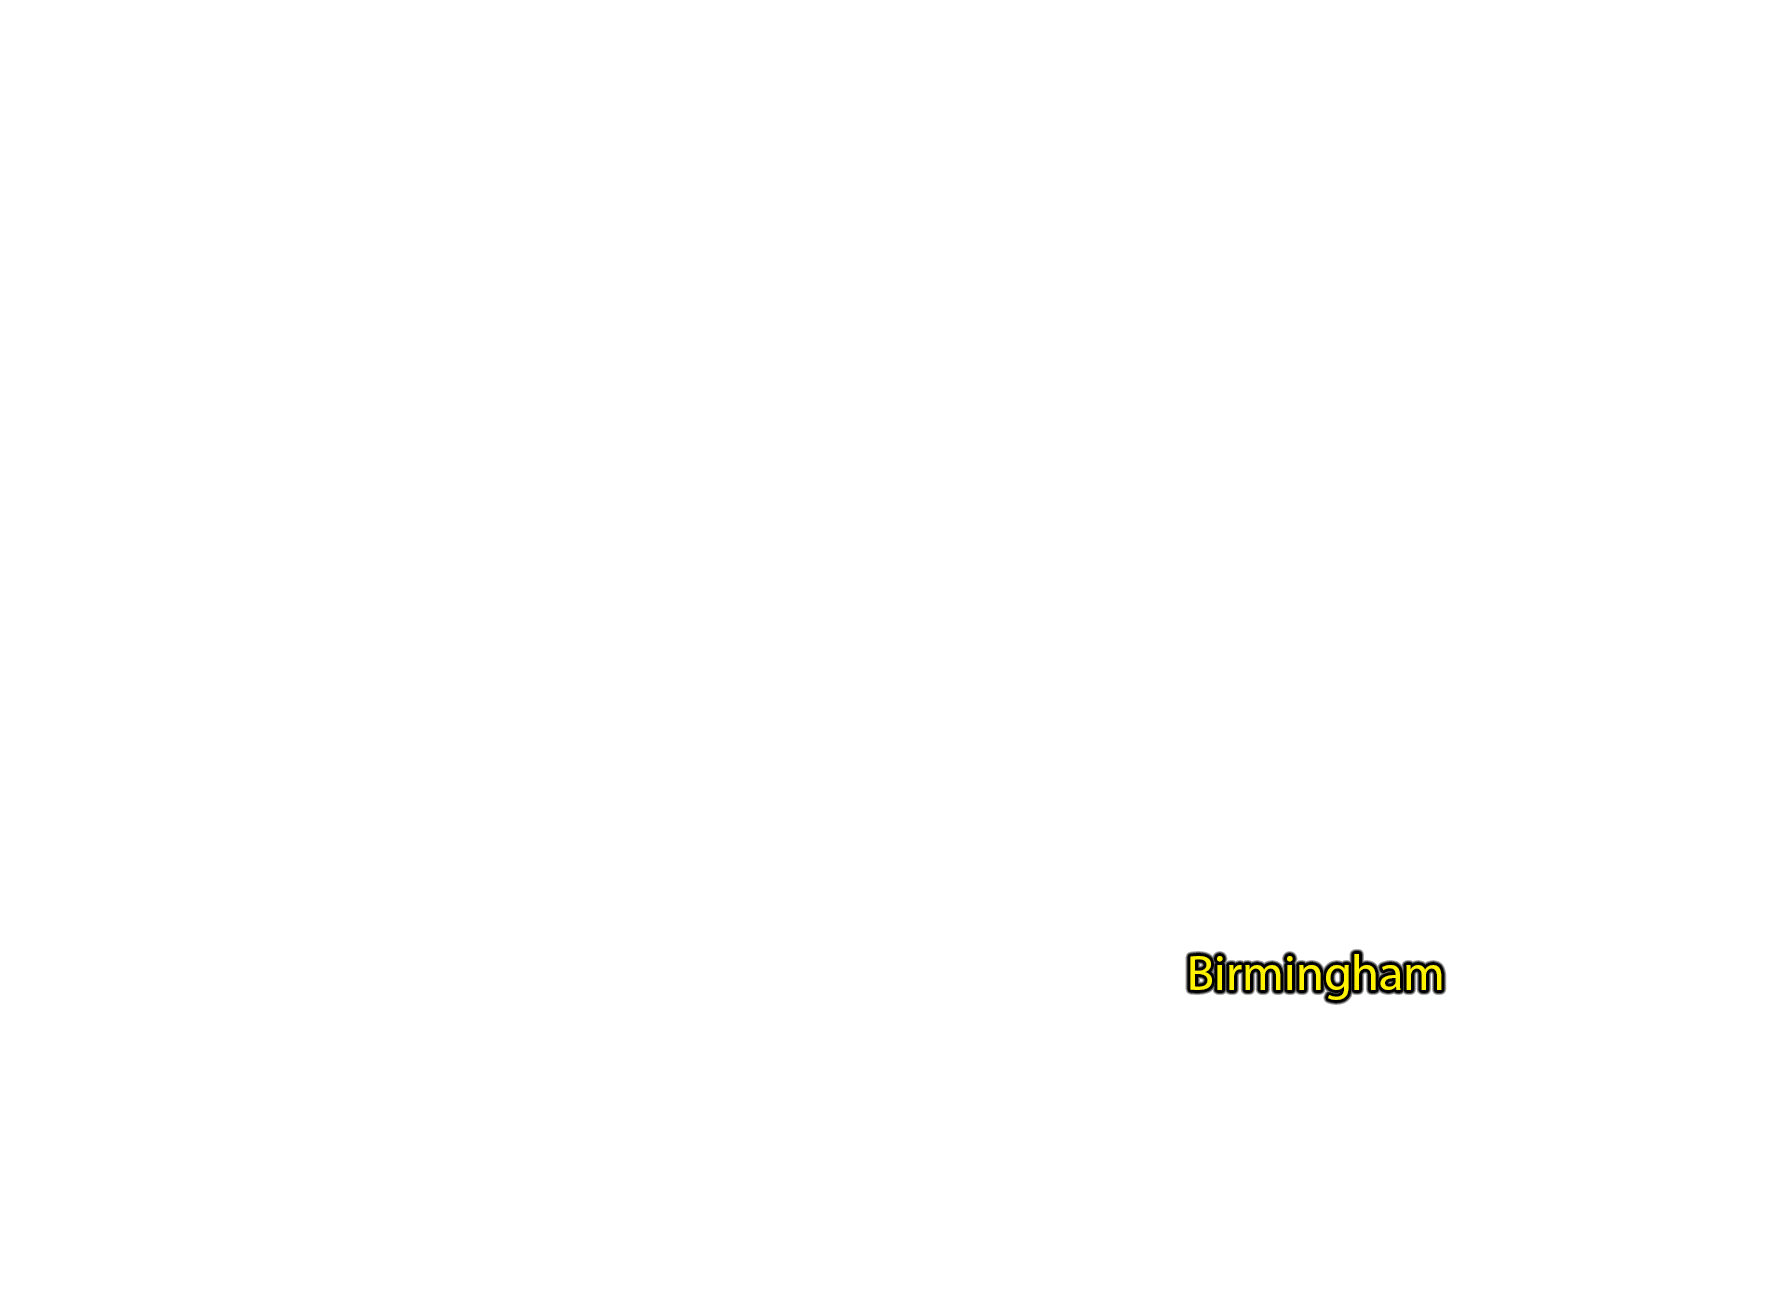 Birmingham label with glow